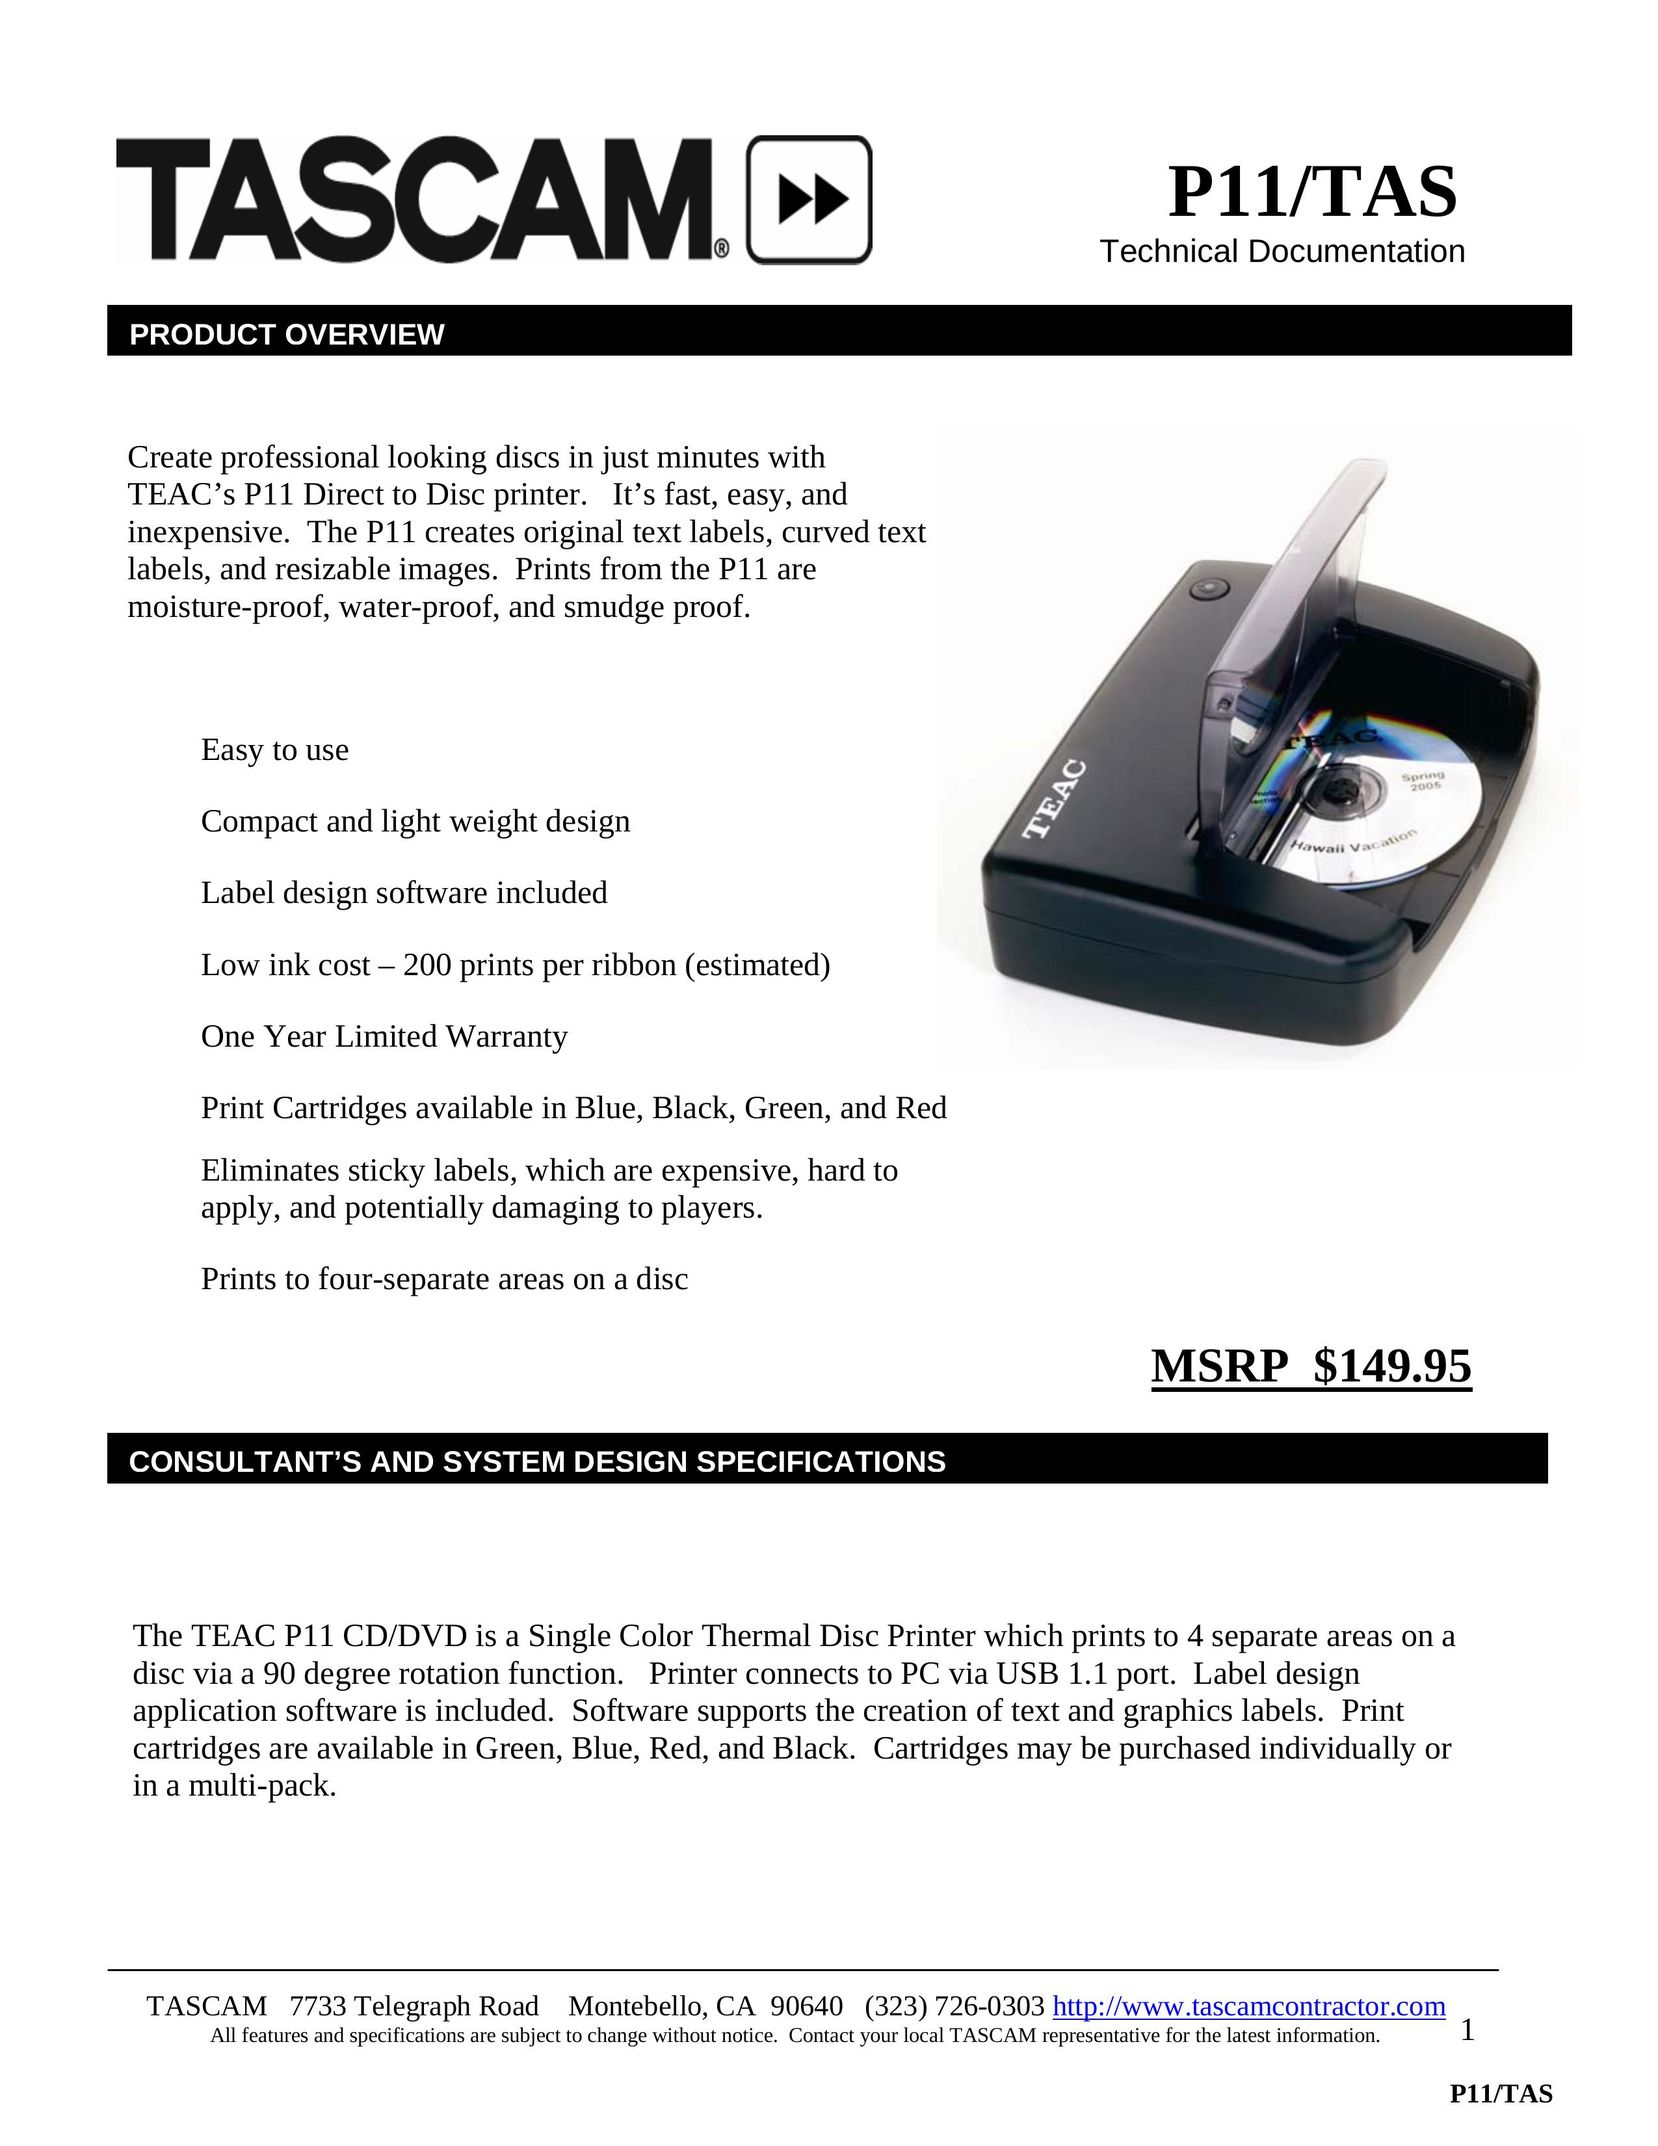 Tascam P11/TAS Printer User Manual